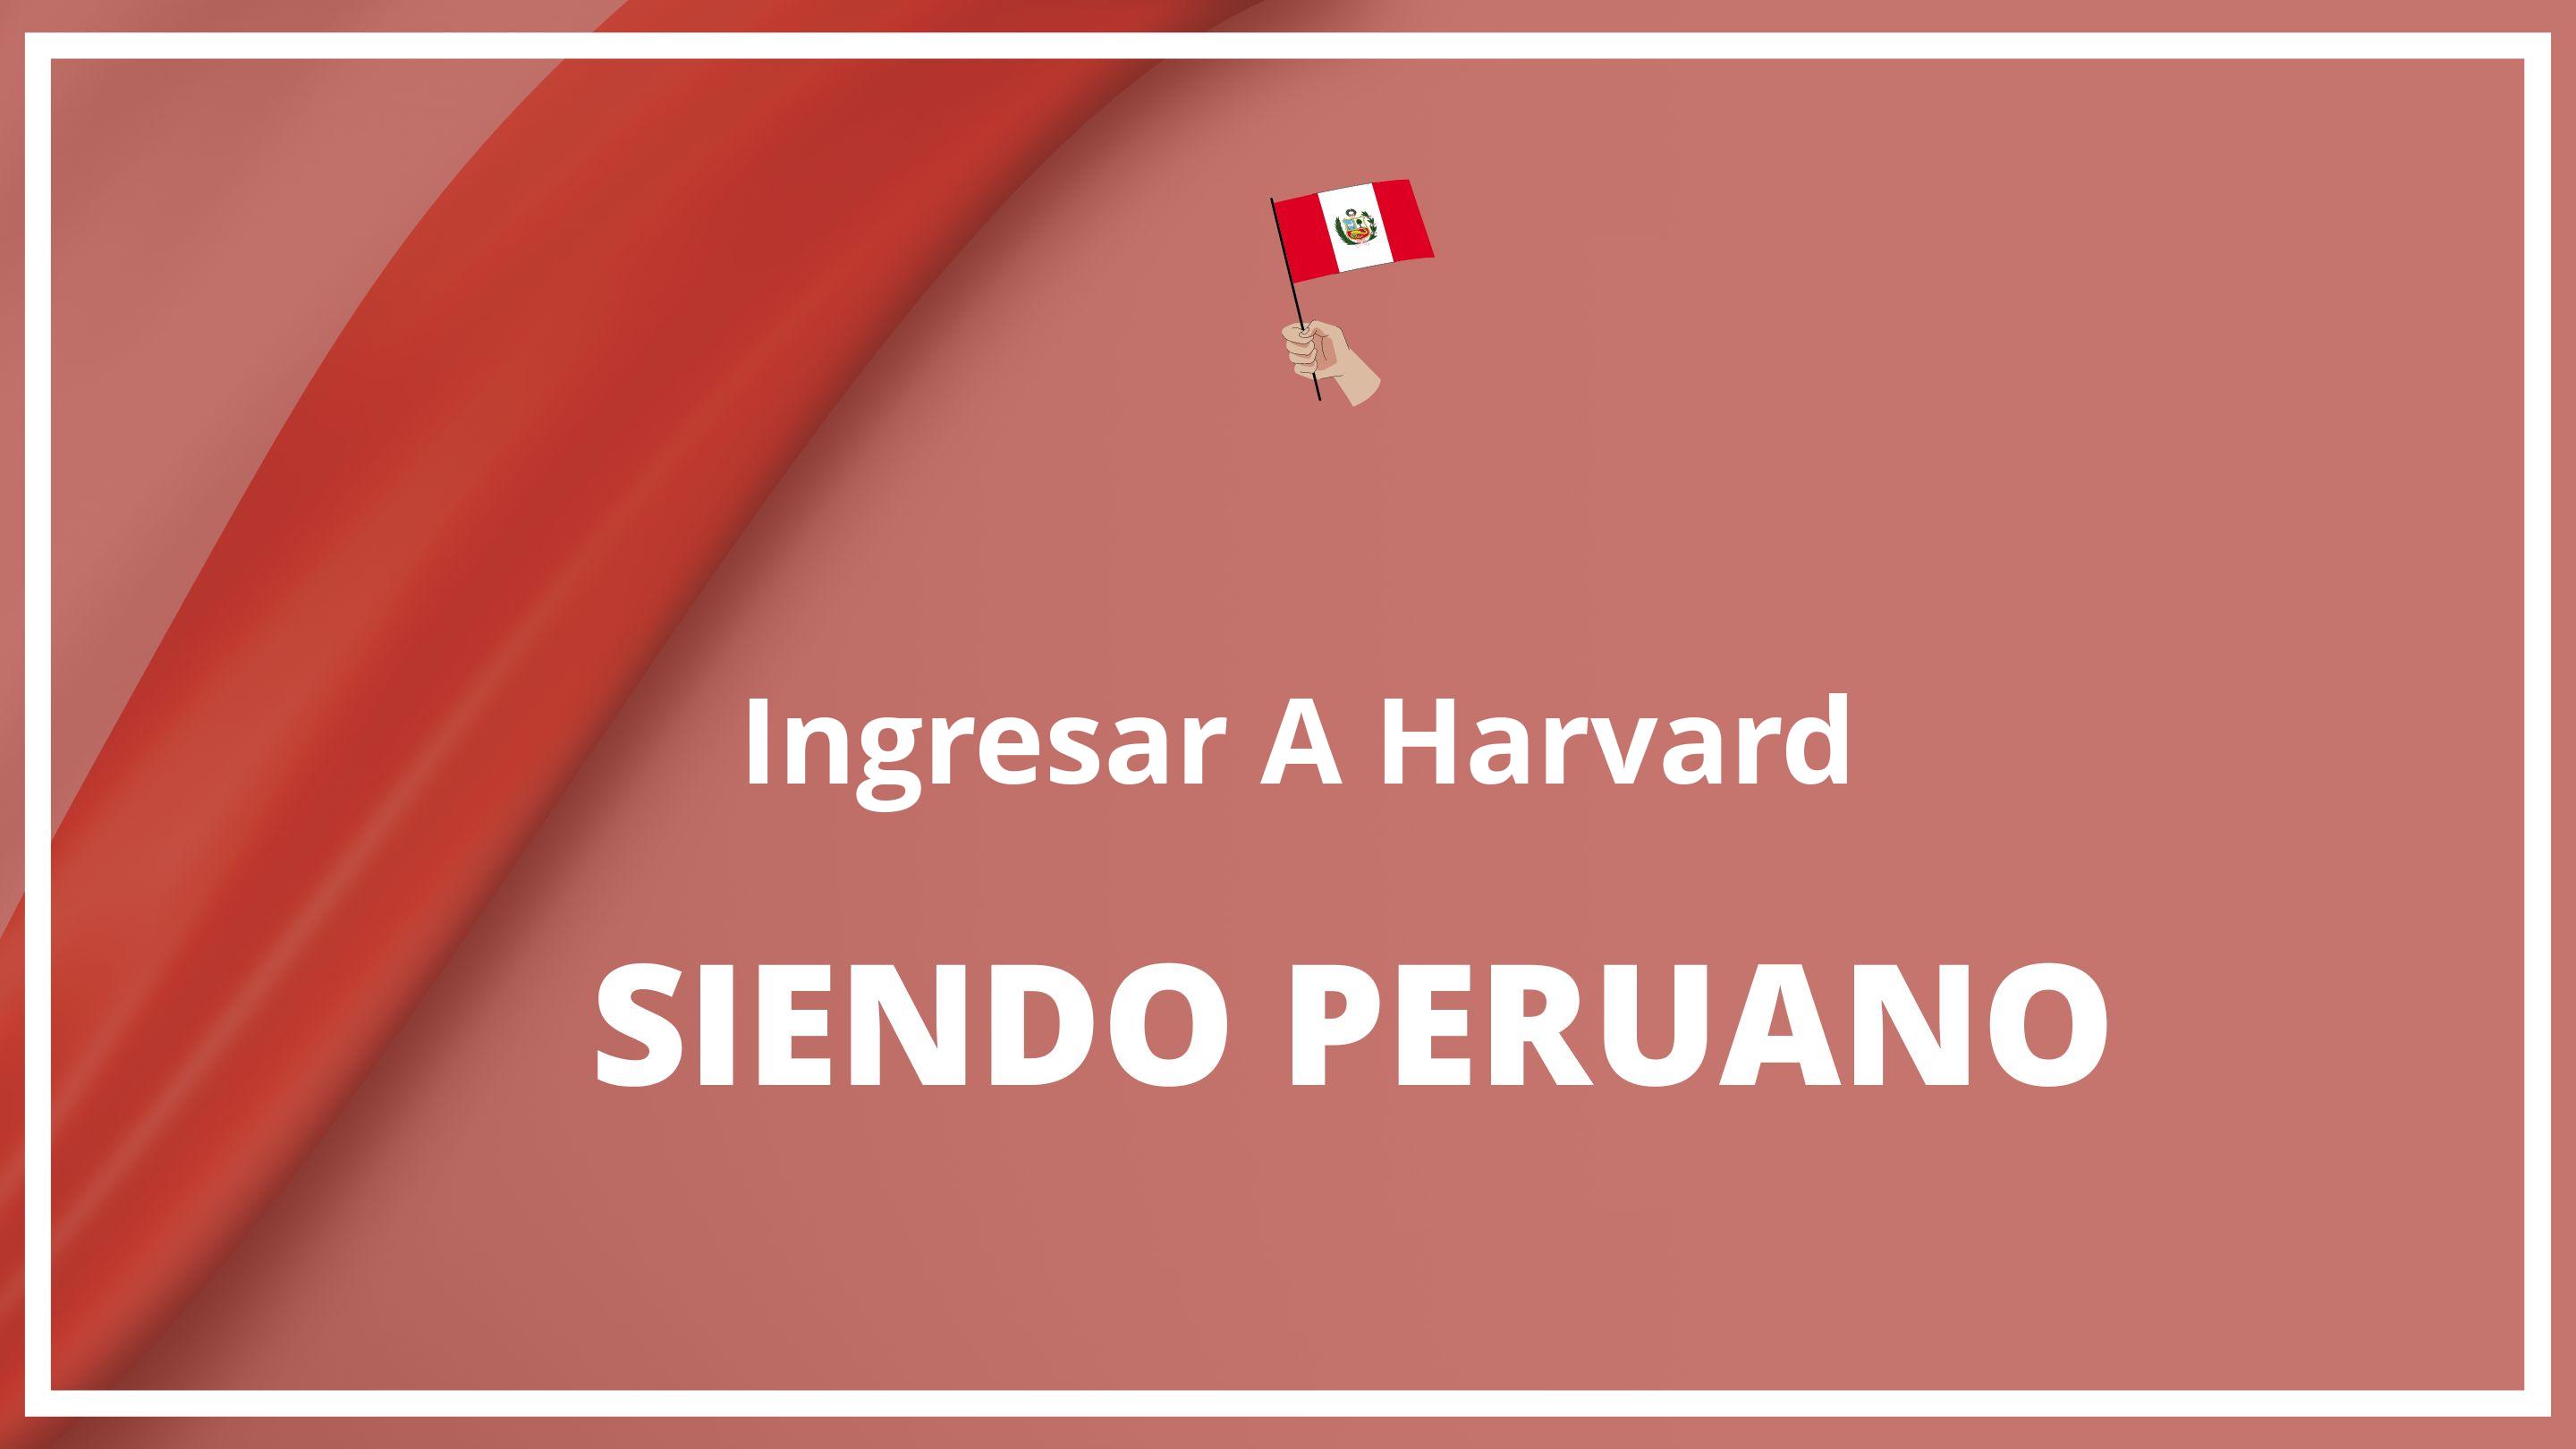 Como ingresar a harvard siendo peruano